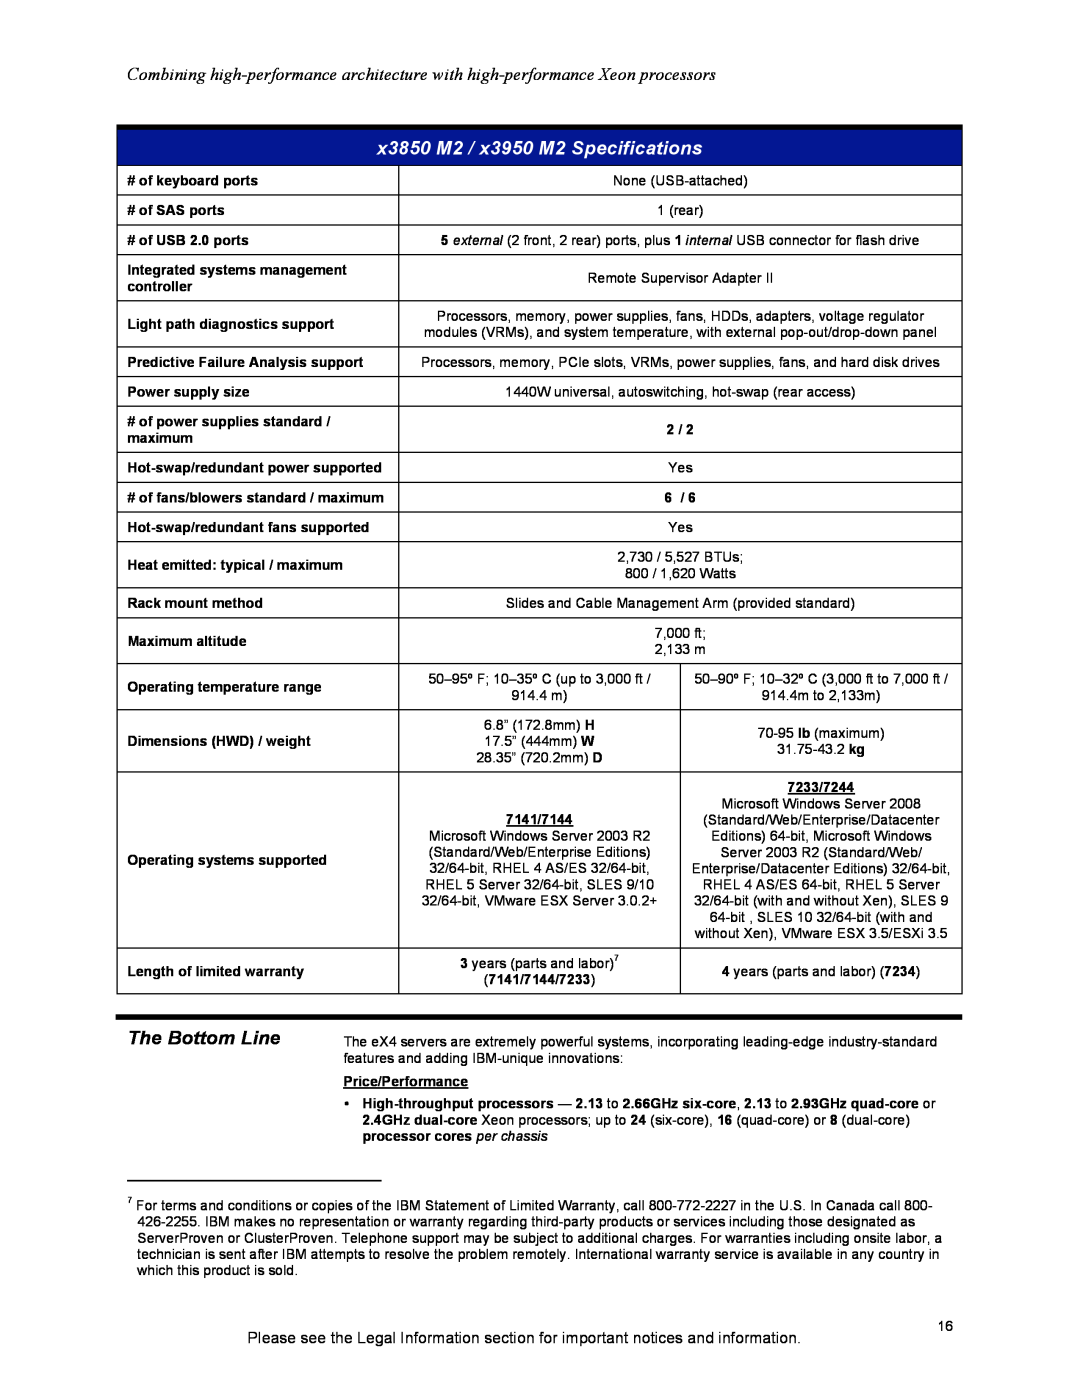 IBM X3850 M2, X3950 M2 manual The Bottom Line, x3850 M2 / x3950 M2 Specifications 